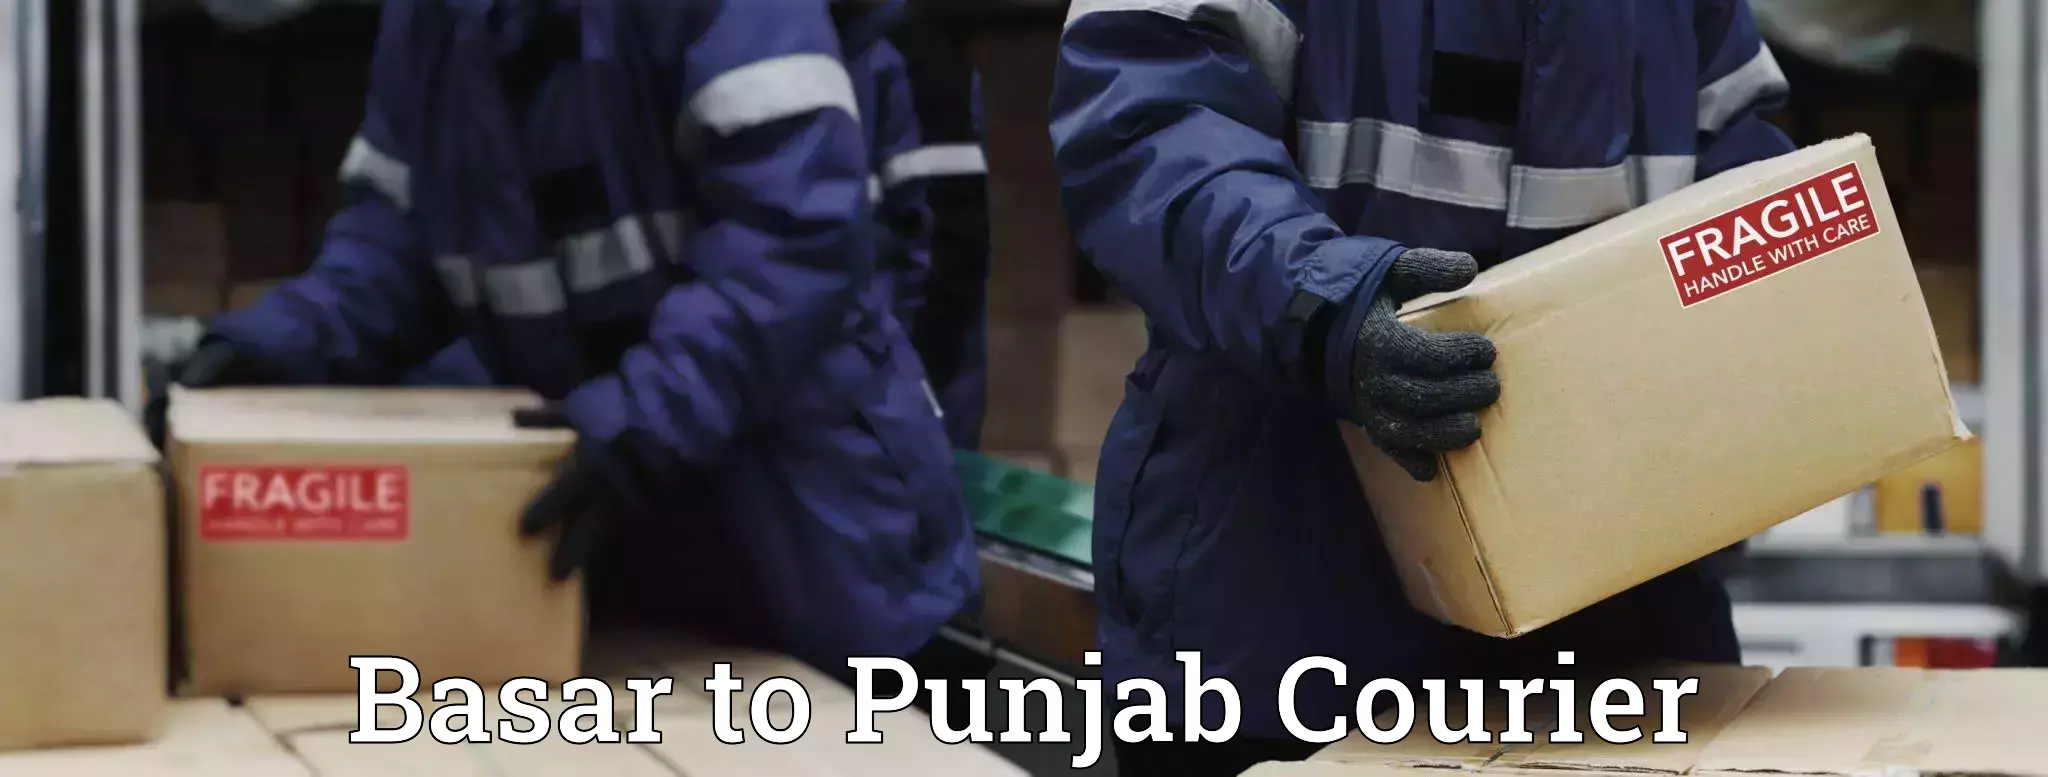 Versatile courier options Basar to Punjab